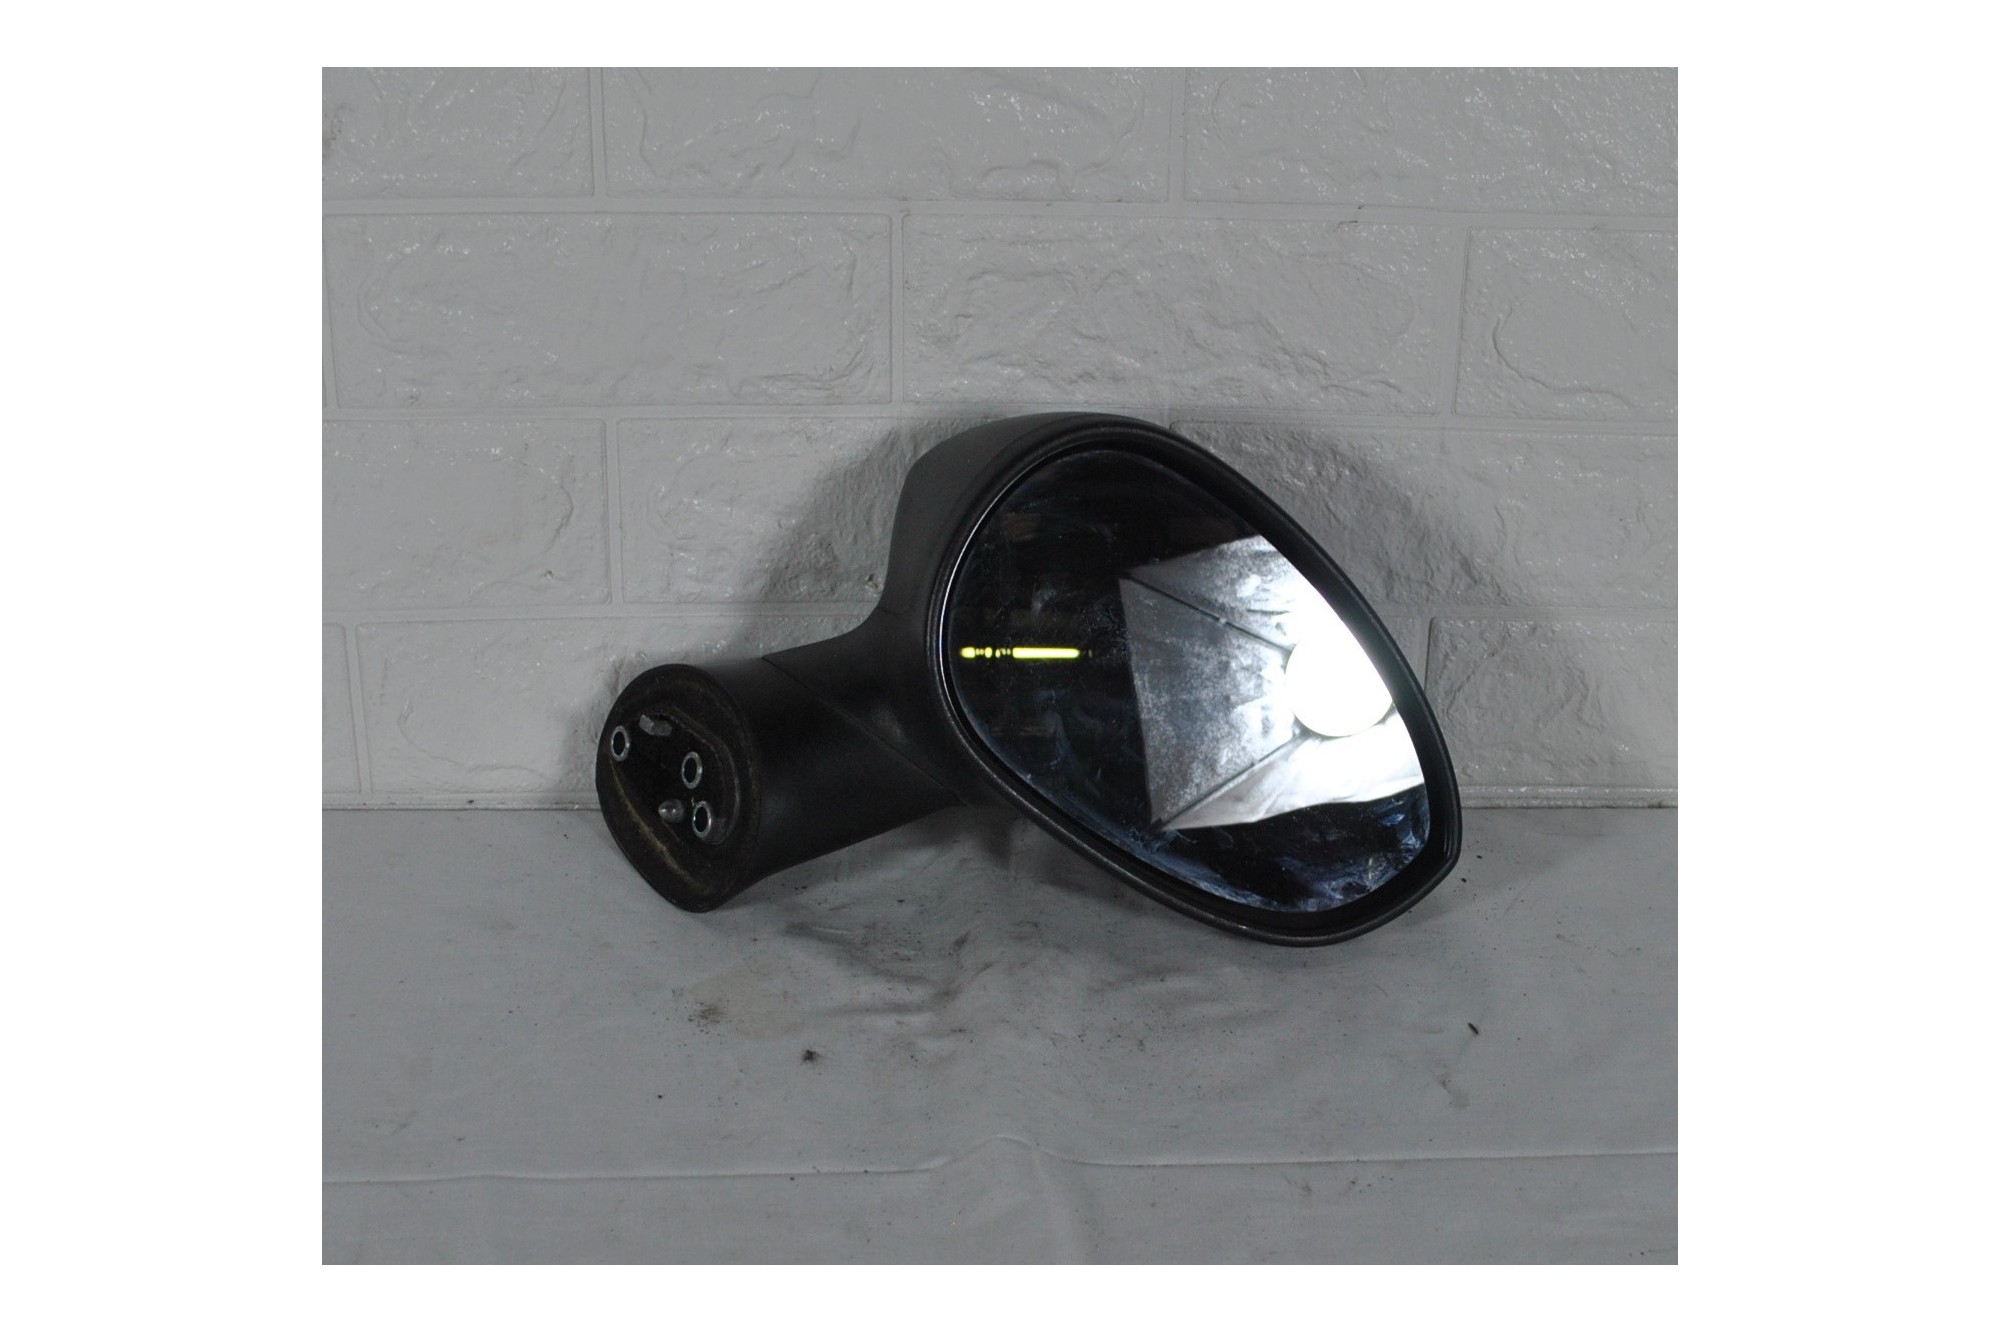 Specchietto retrovisore esterno destro DX Fiat Punto Evo Dal 2009 al 2012 Cod. 011024  1623252163430